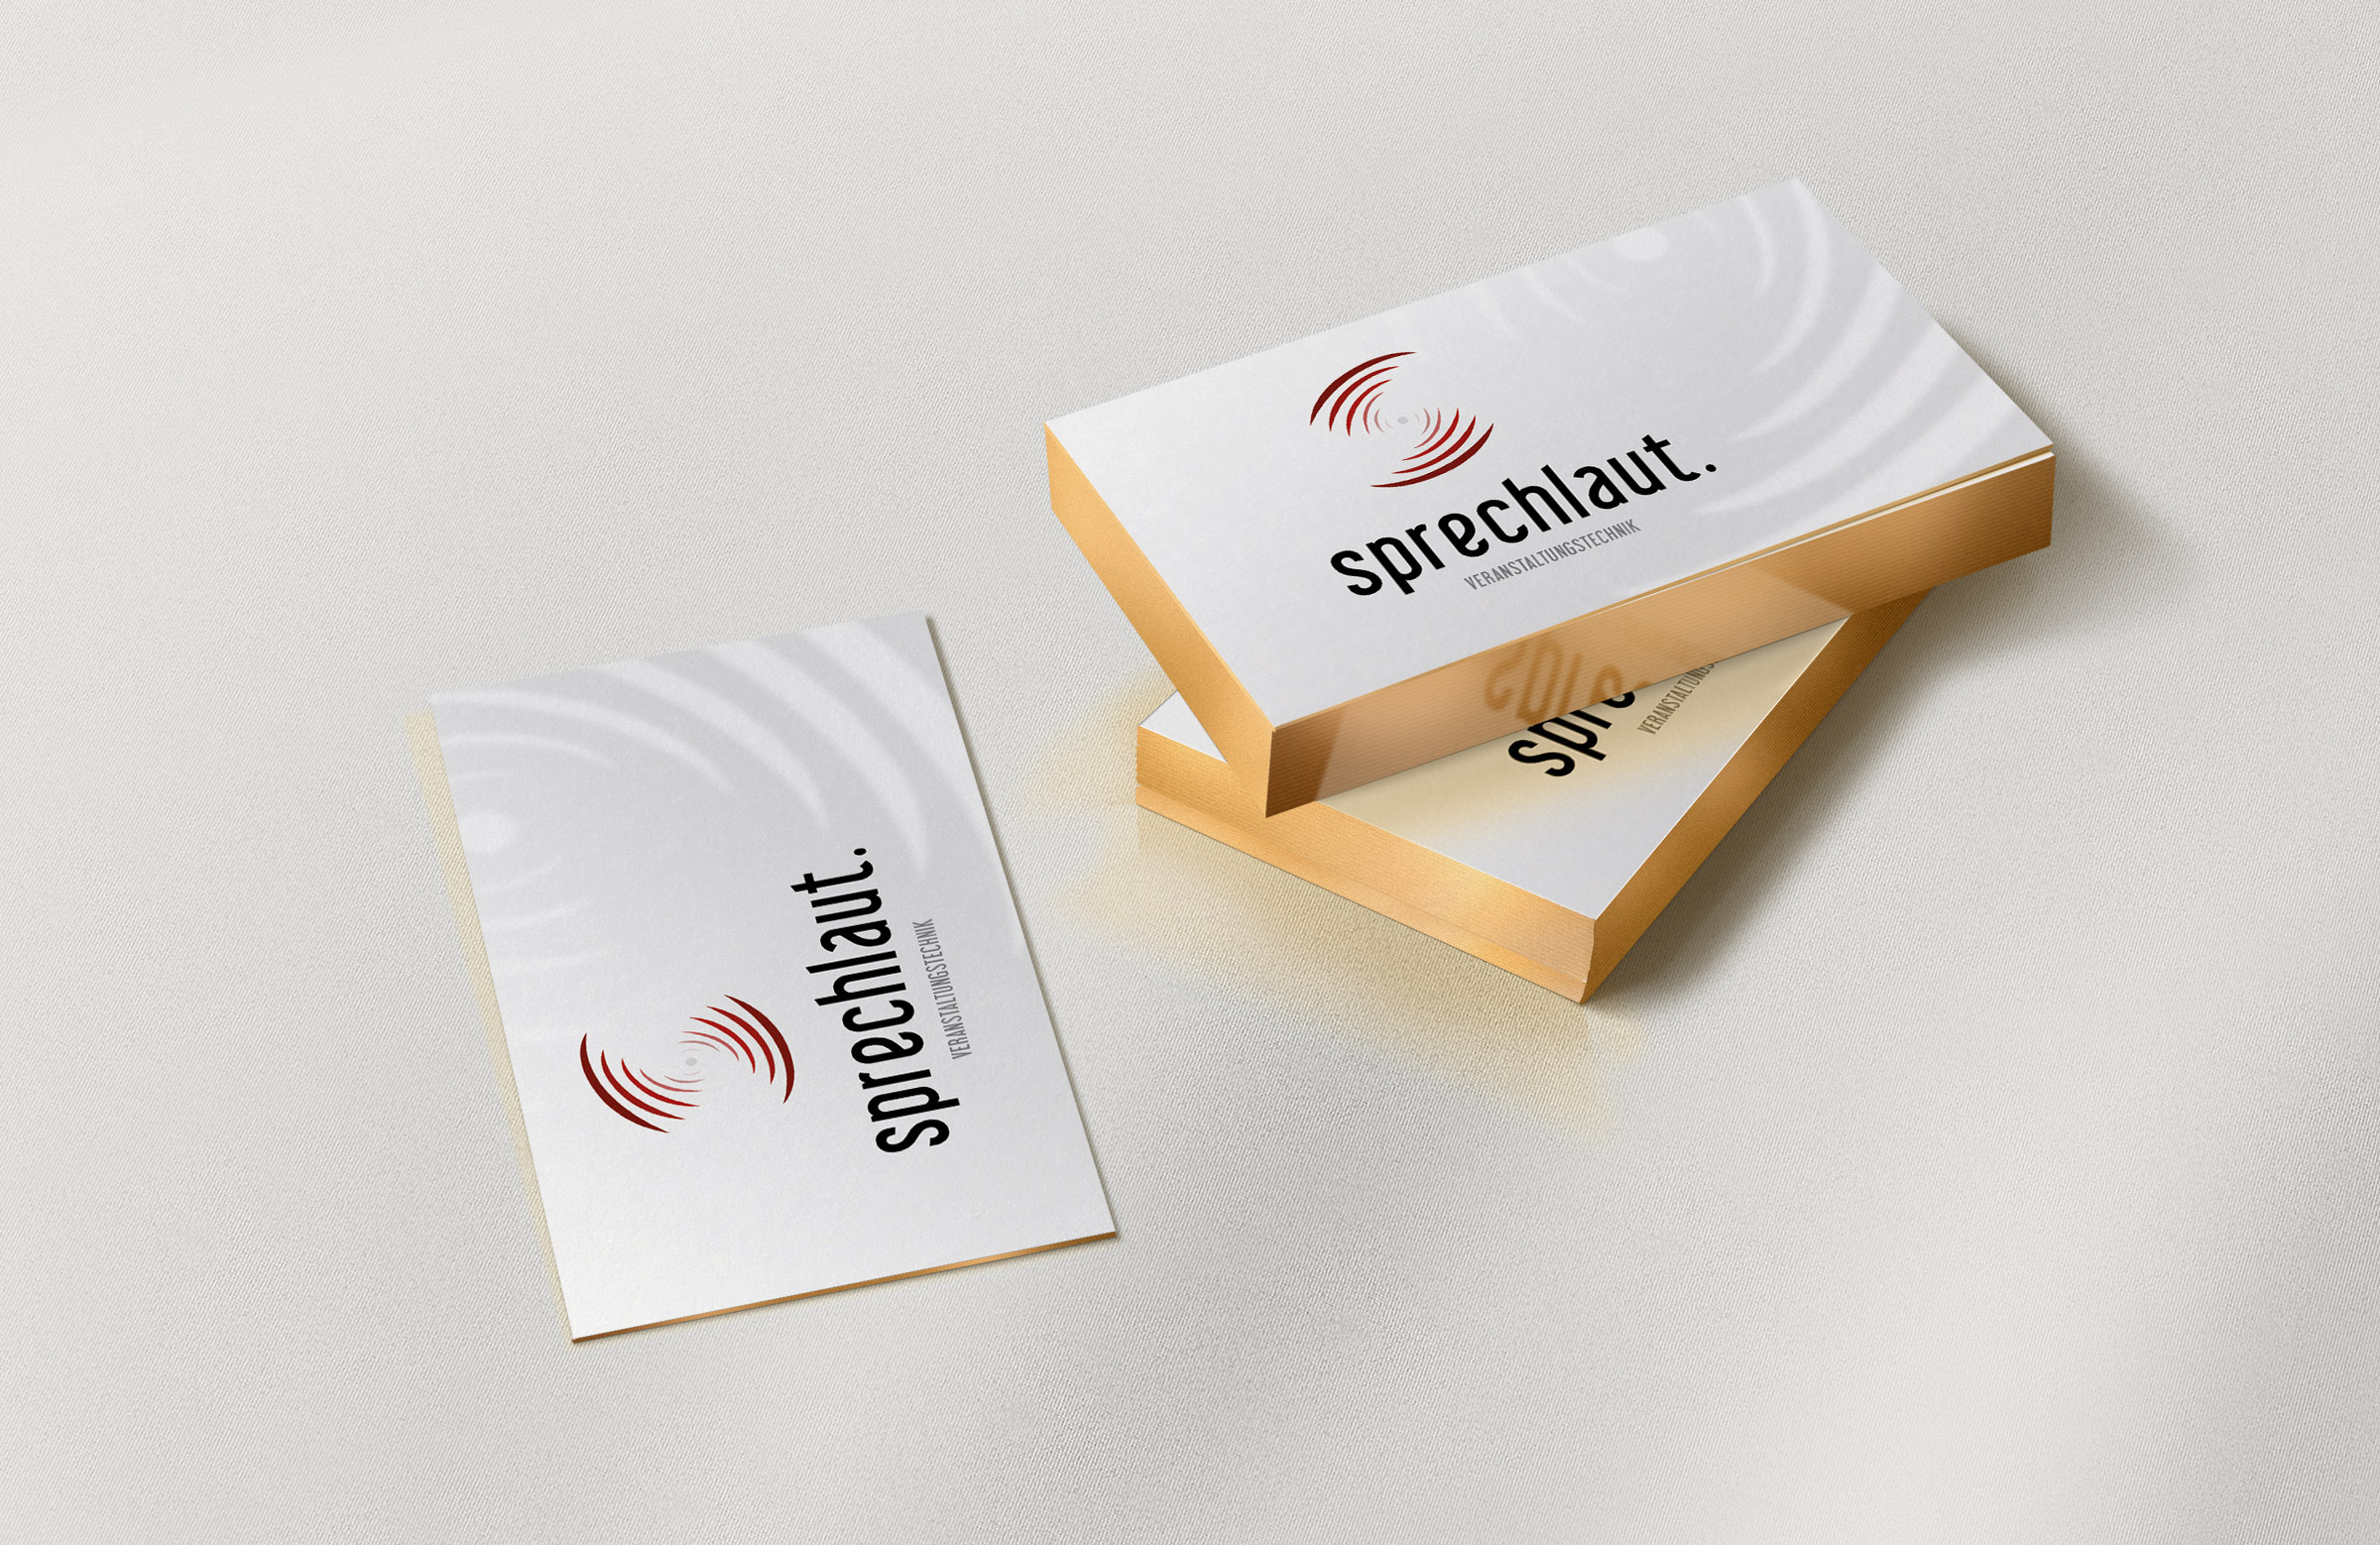 Sprechlaut, Stuttgart, Branding, Screendesign, Website, CMS, Kommunikation, Stuttgart